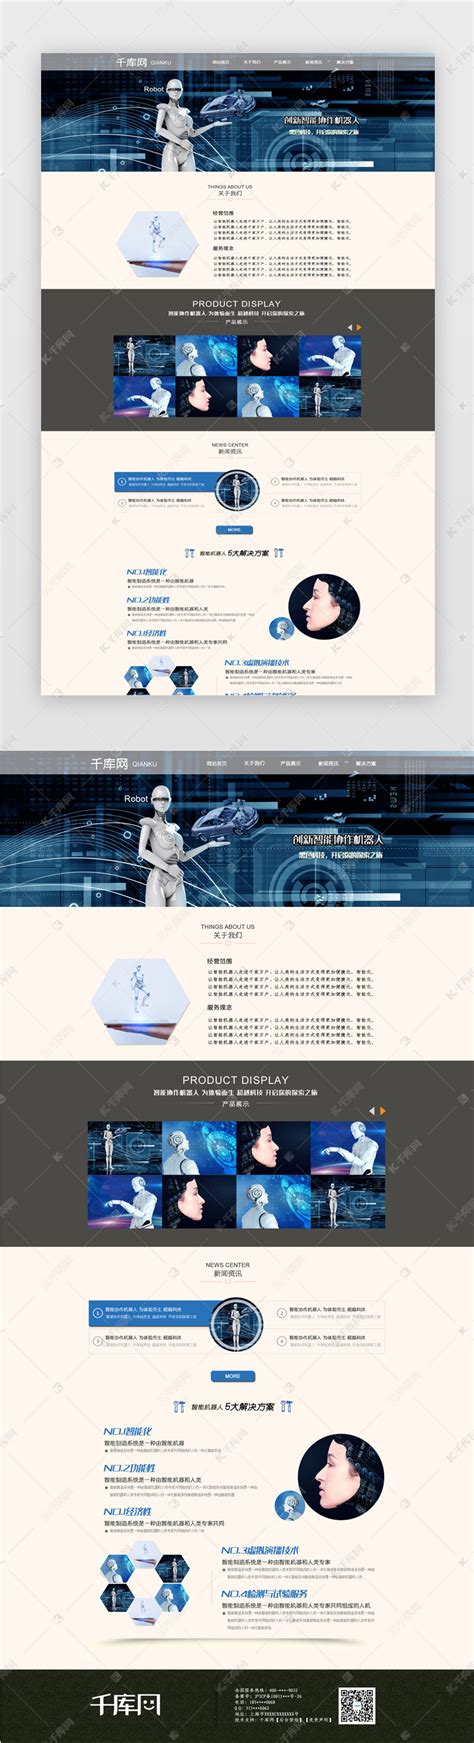 黑色简洁大气科技智能机器人网站首页模板ui界面设计素材-千库网